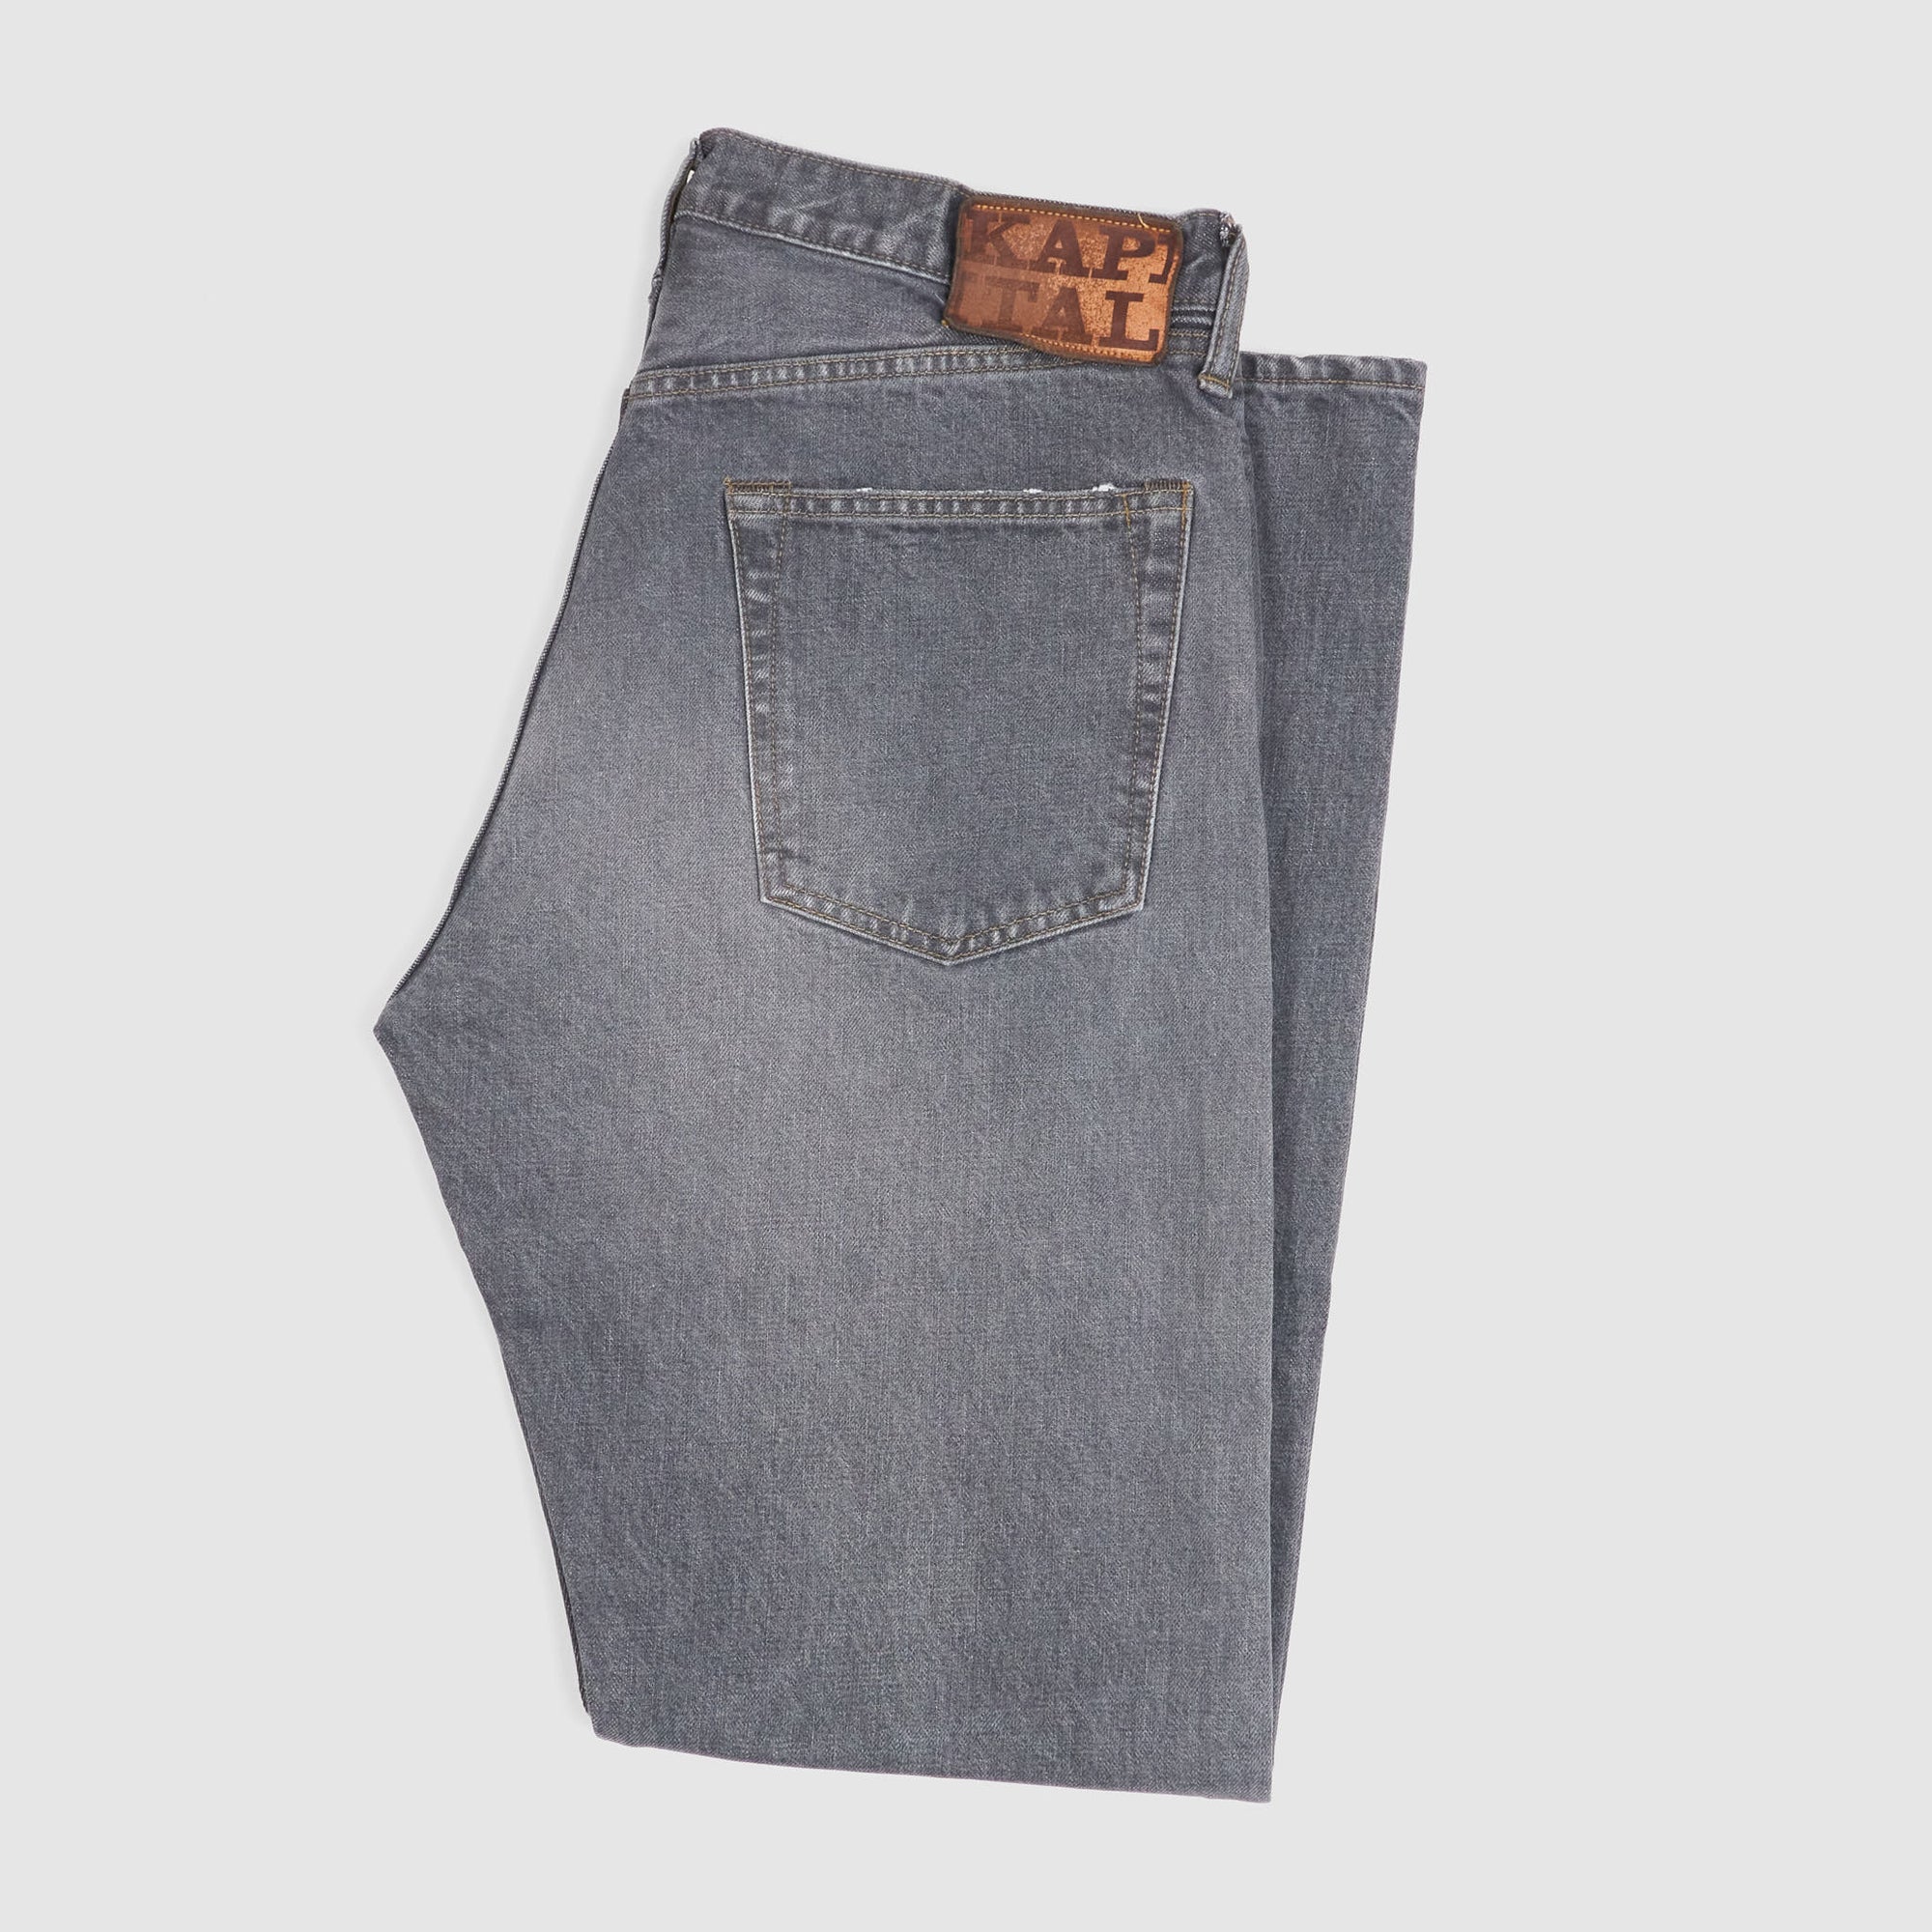 Kapital 5-Pocket Black Hard Washed Denim Jeans - DeeCee style